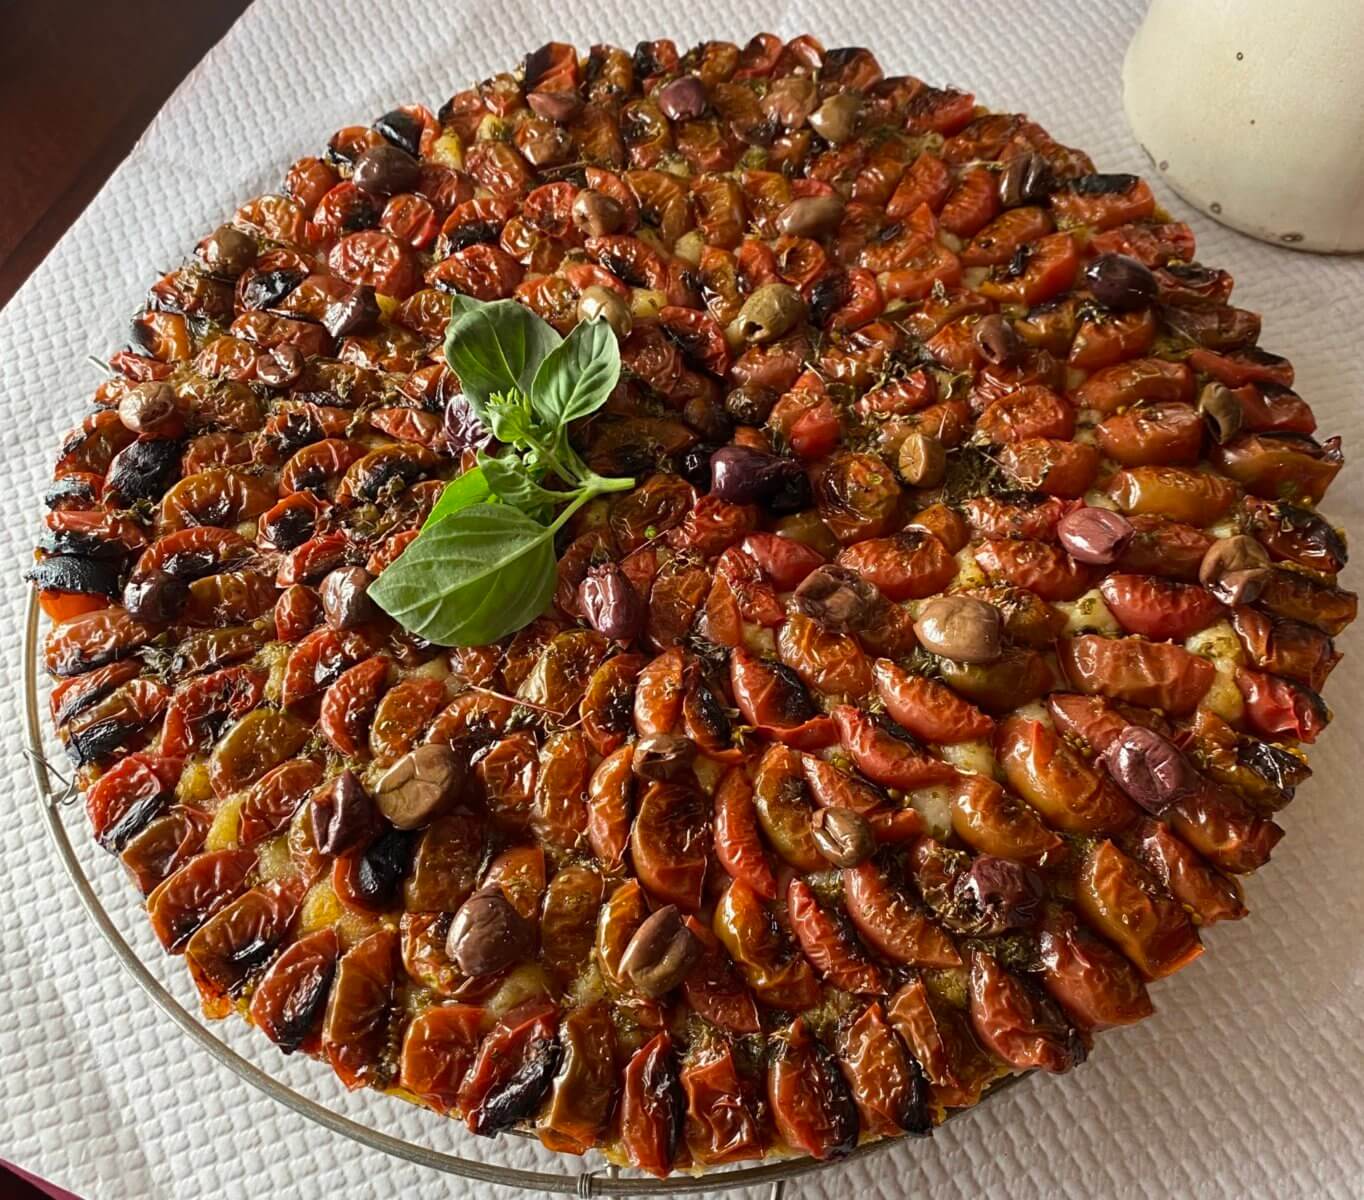 Tomato tart by La Merenda's Dominique Le Stanc